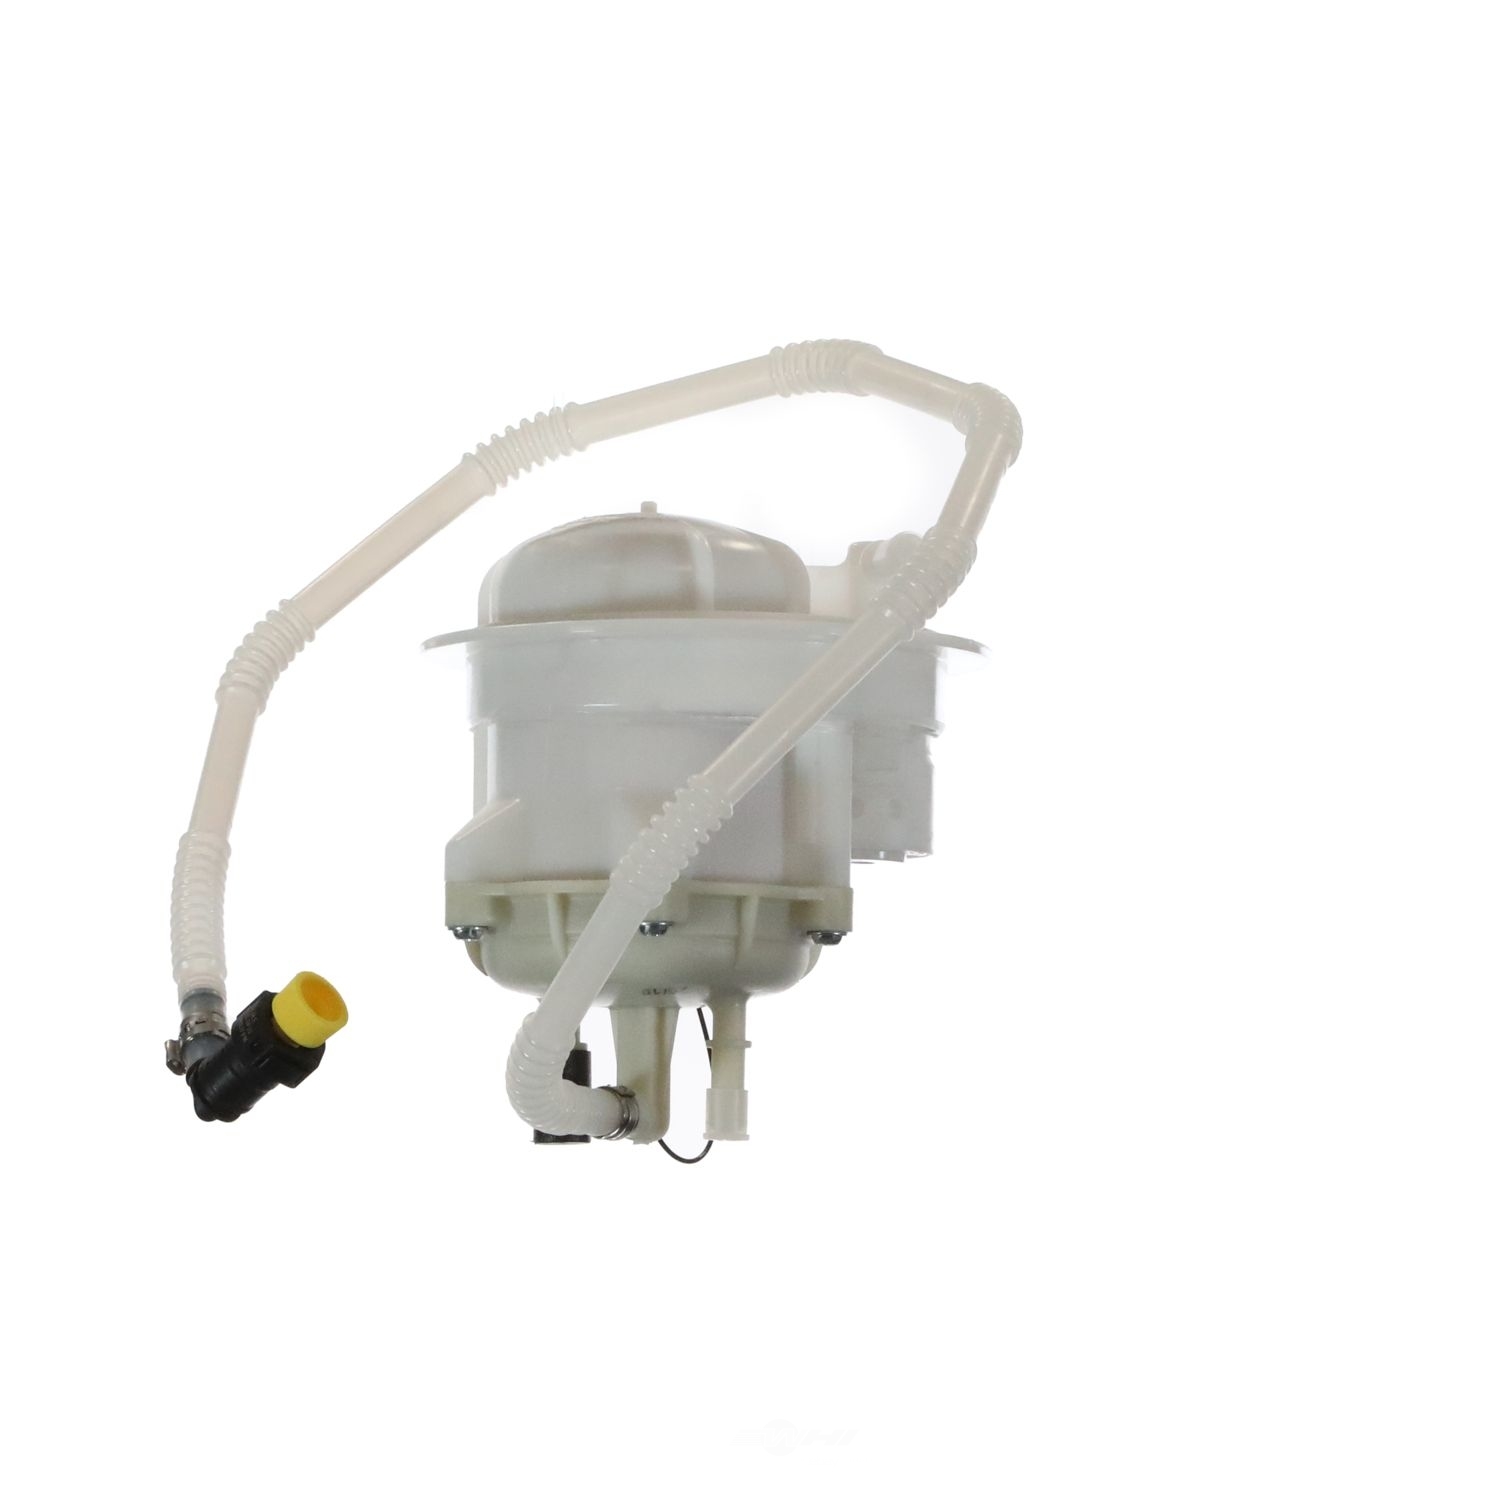 VDO - Fuel Filter - SIE 229-025-003-001Z